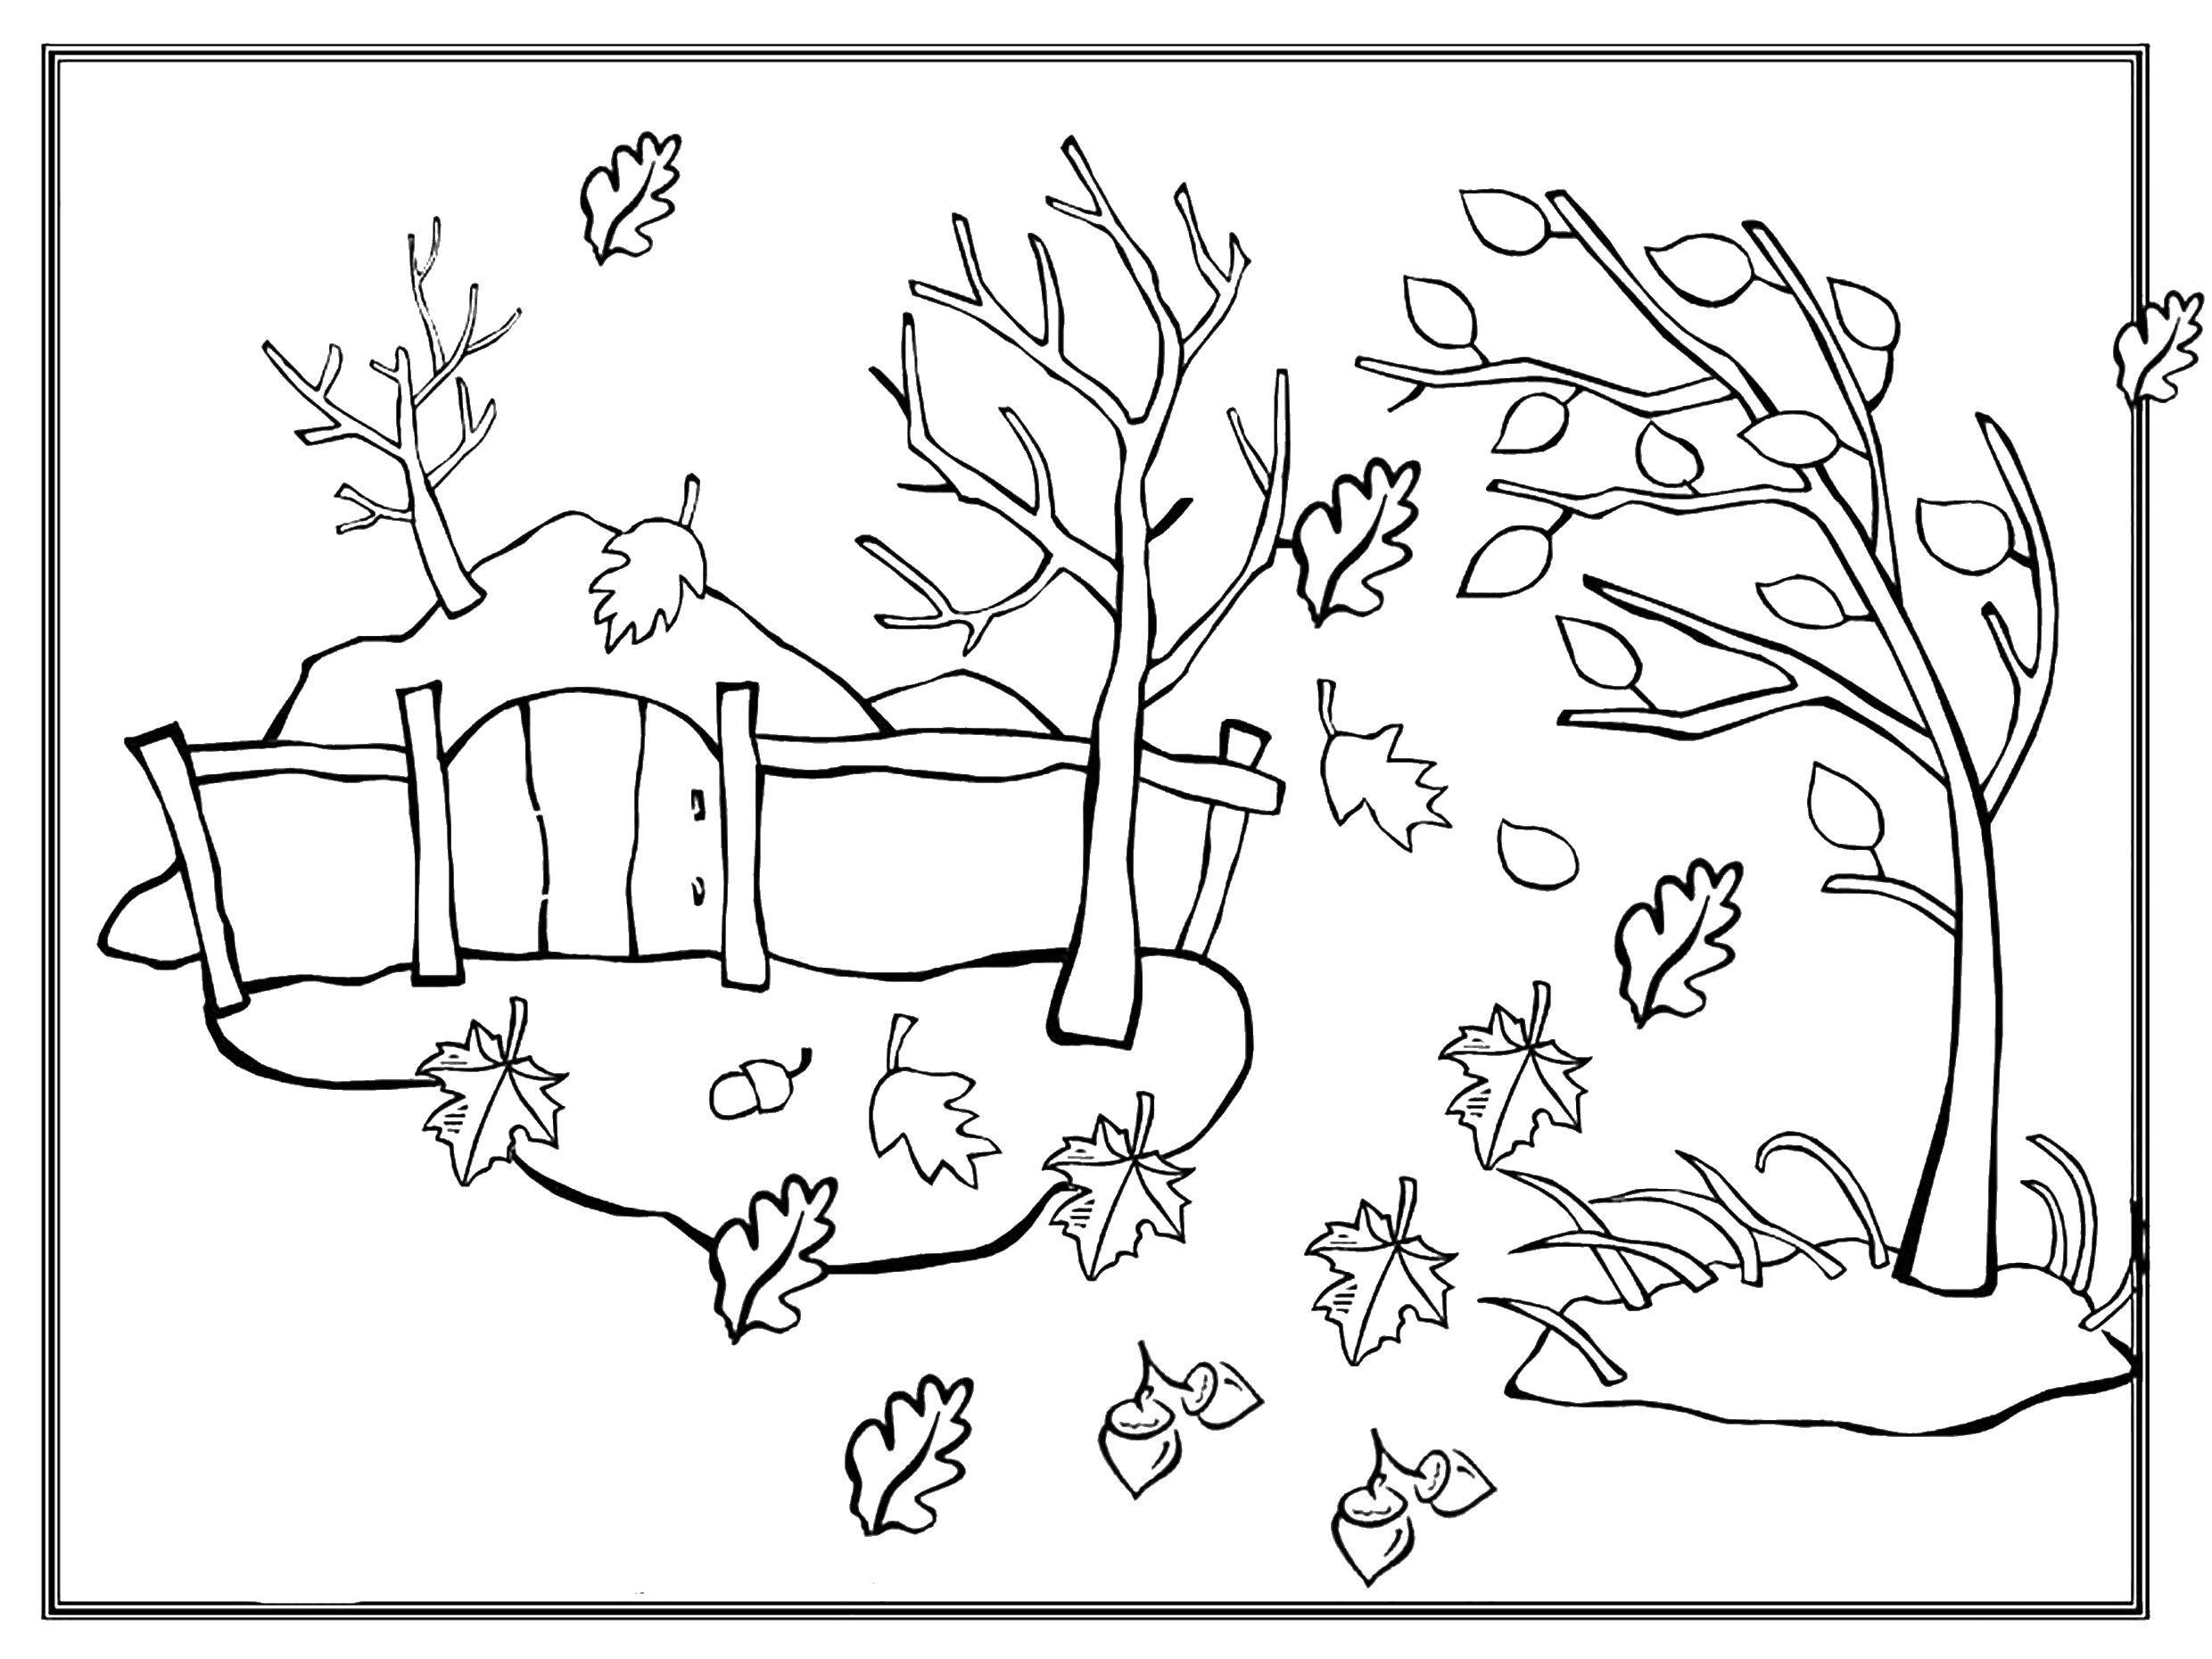 Листопад. Раскраски для детей на тему листопад. Раскраски листопад. Раскраски на тему окружающий мир, осень, раскраски с листьями. Скачать раскраски листопад.   